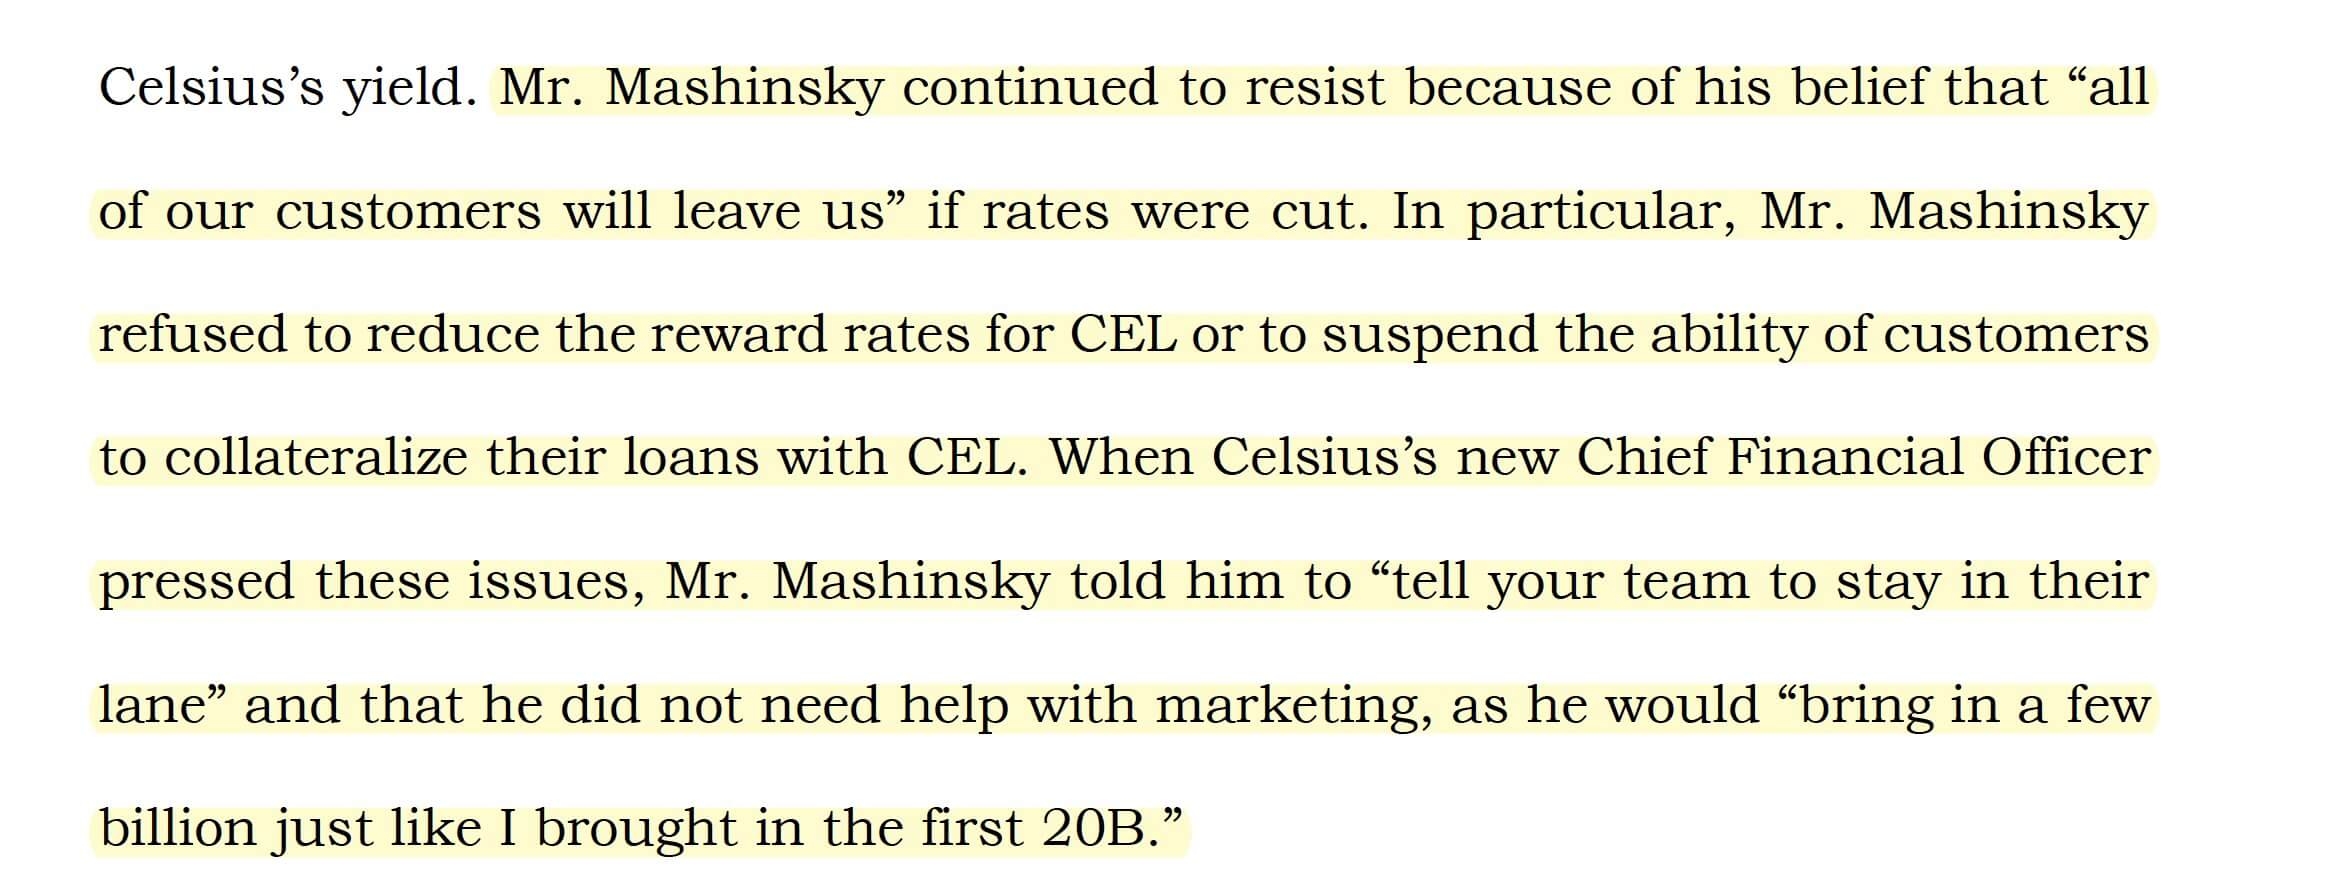 Что произошло с криптоплатформой Celsius? Цитата из отчёта о действиях Машинского, в которой он отказывался понижать доходность для пользователей. Фото.